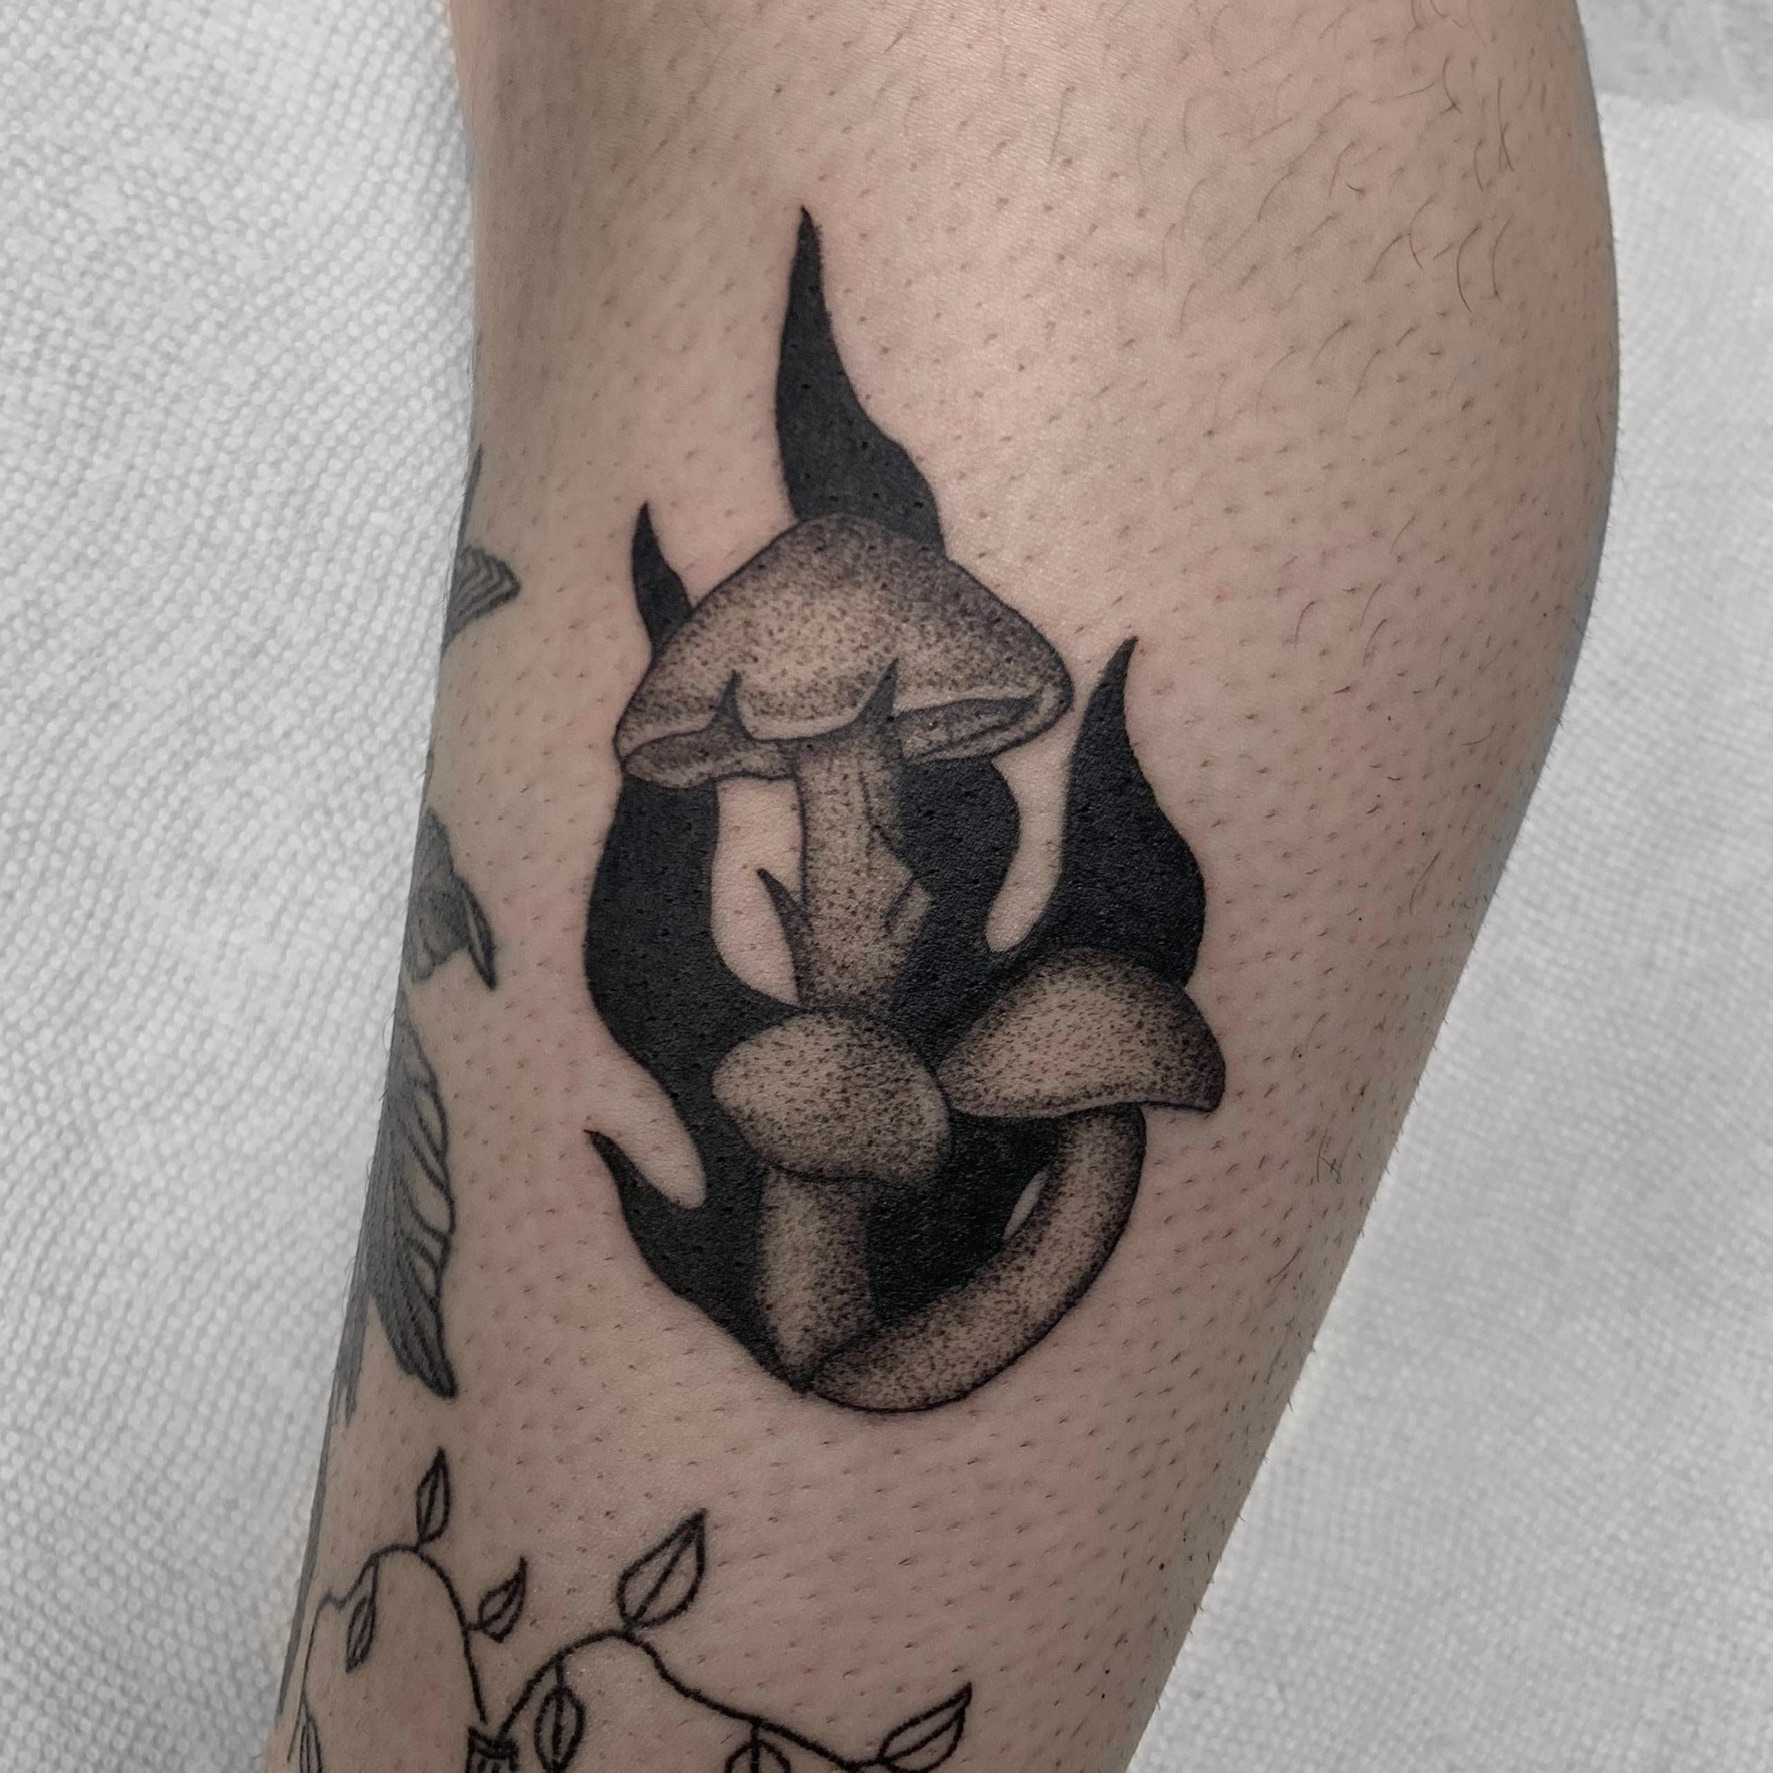 mushrooms-with-black-smoke-tattoo